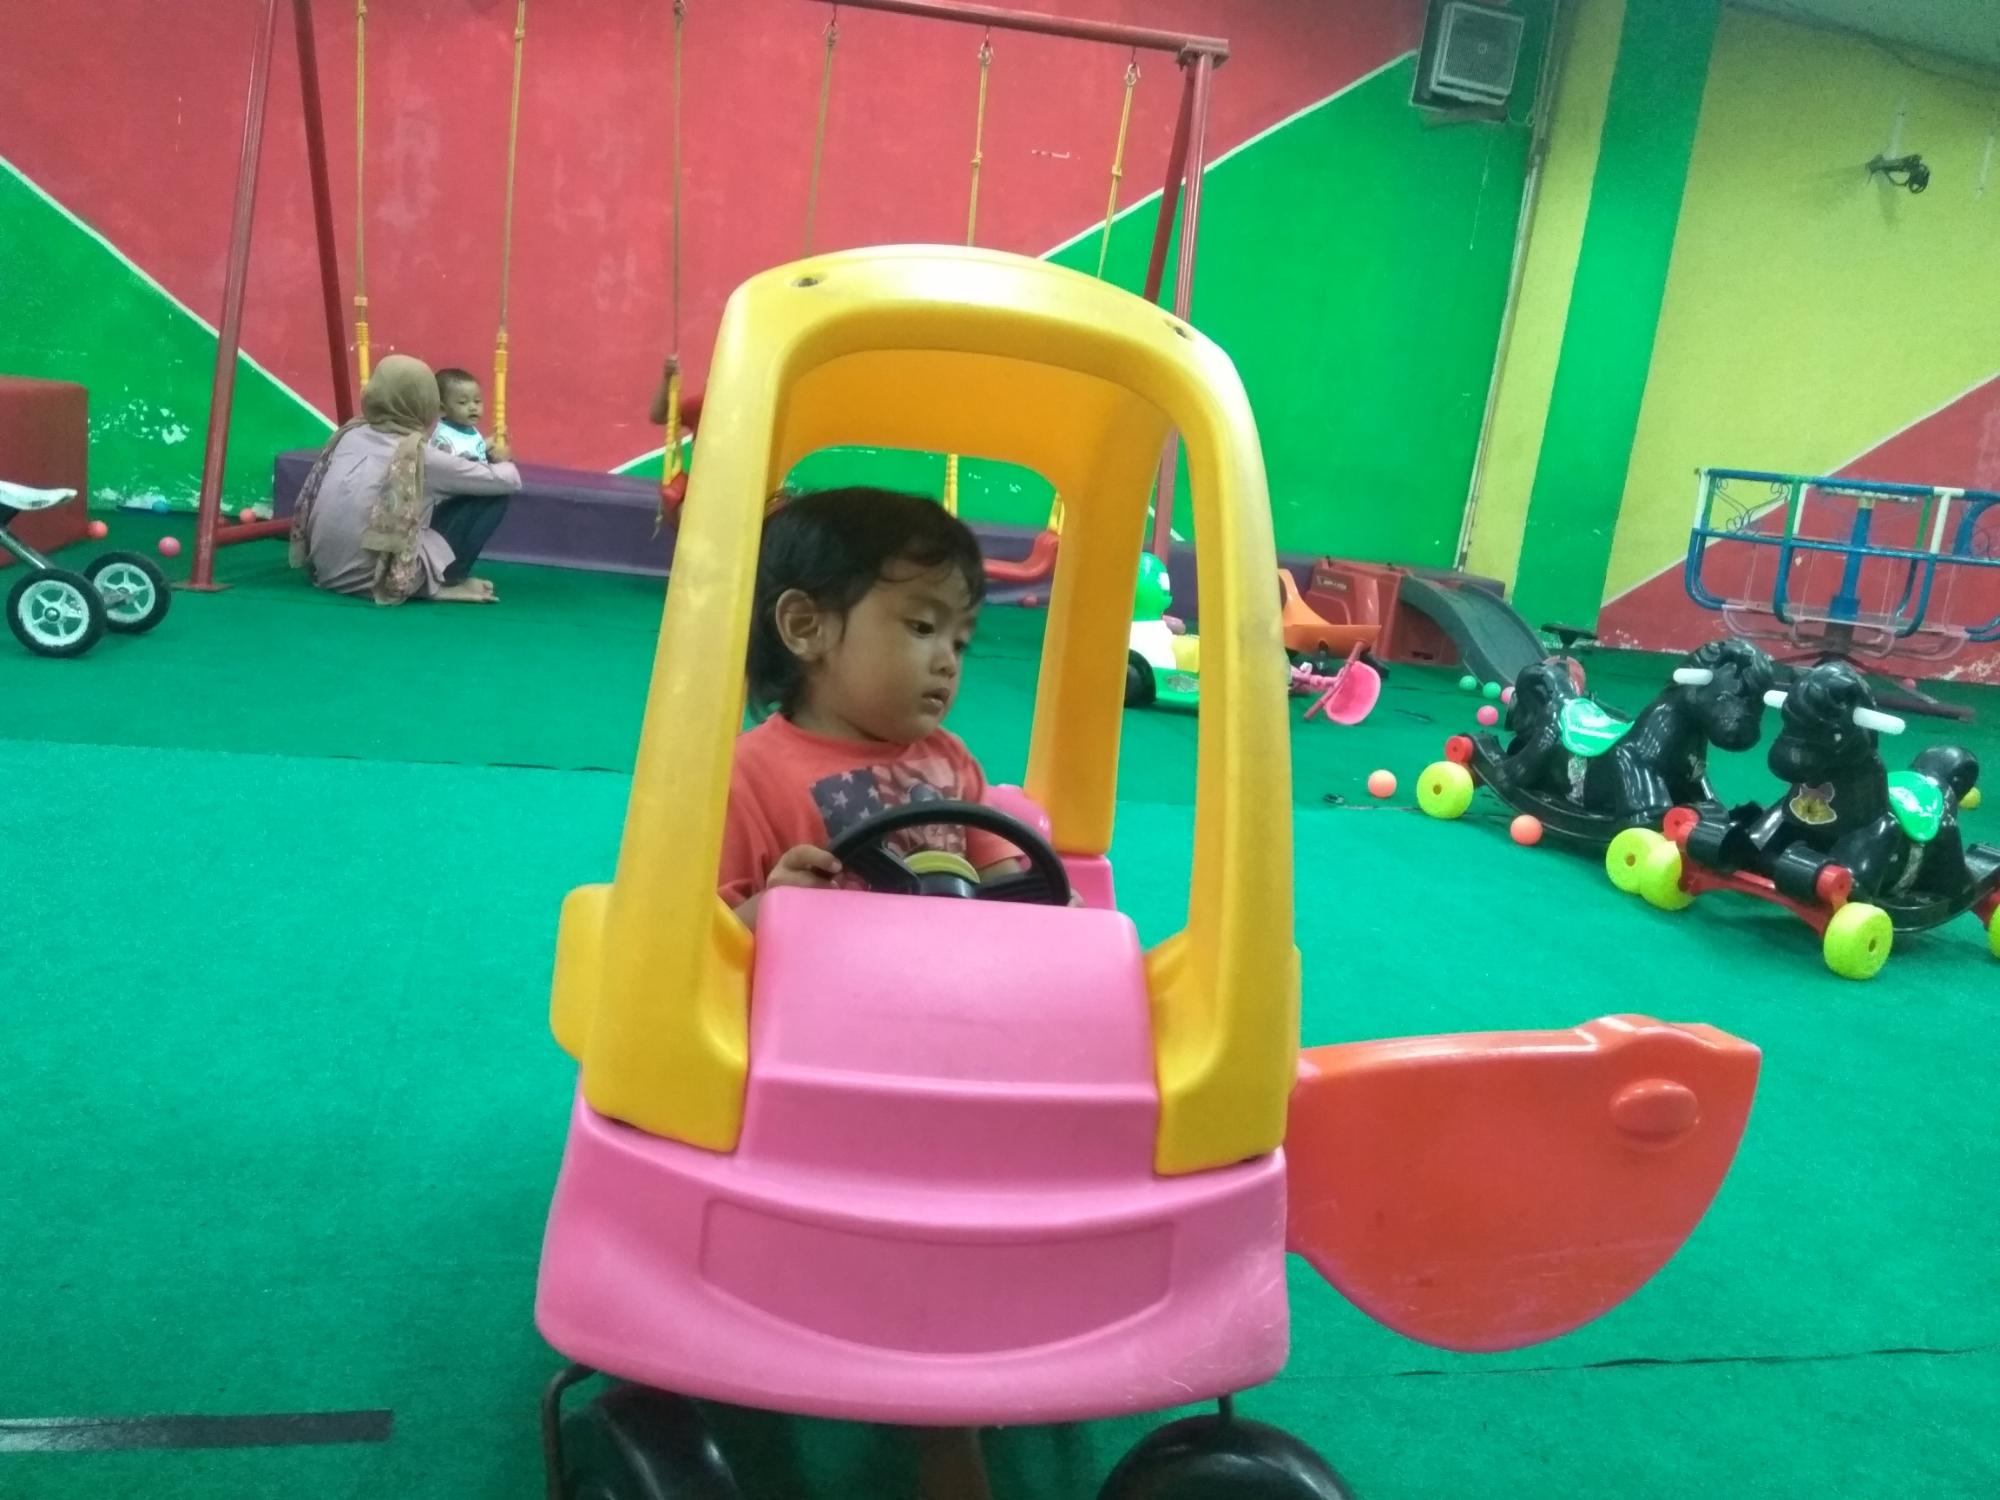 Anak perempuan tengah mengendarai mobil mainan.